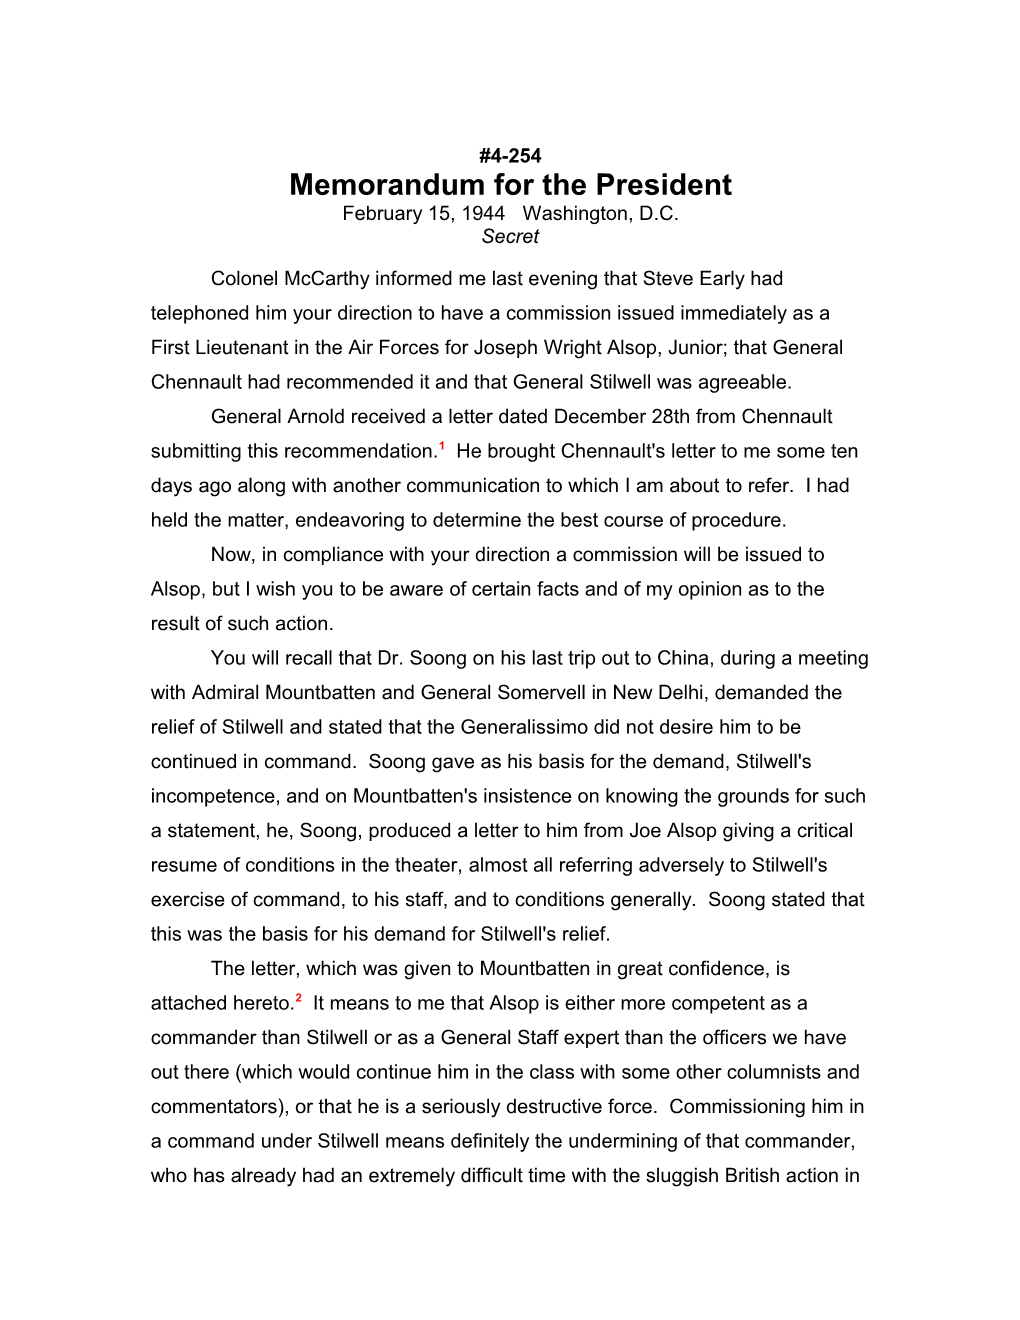 Memorandum for the President s1